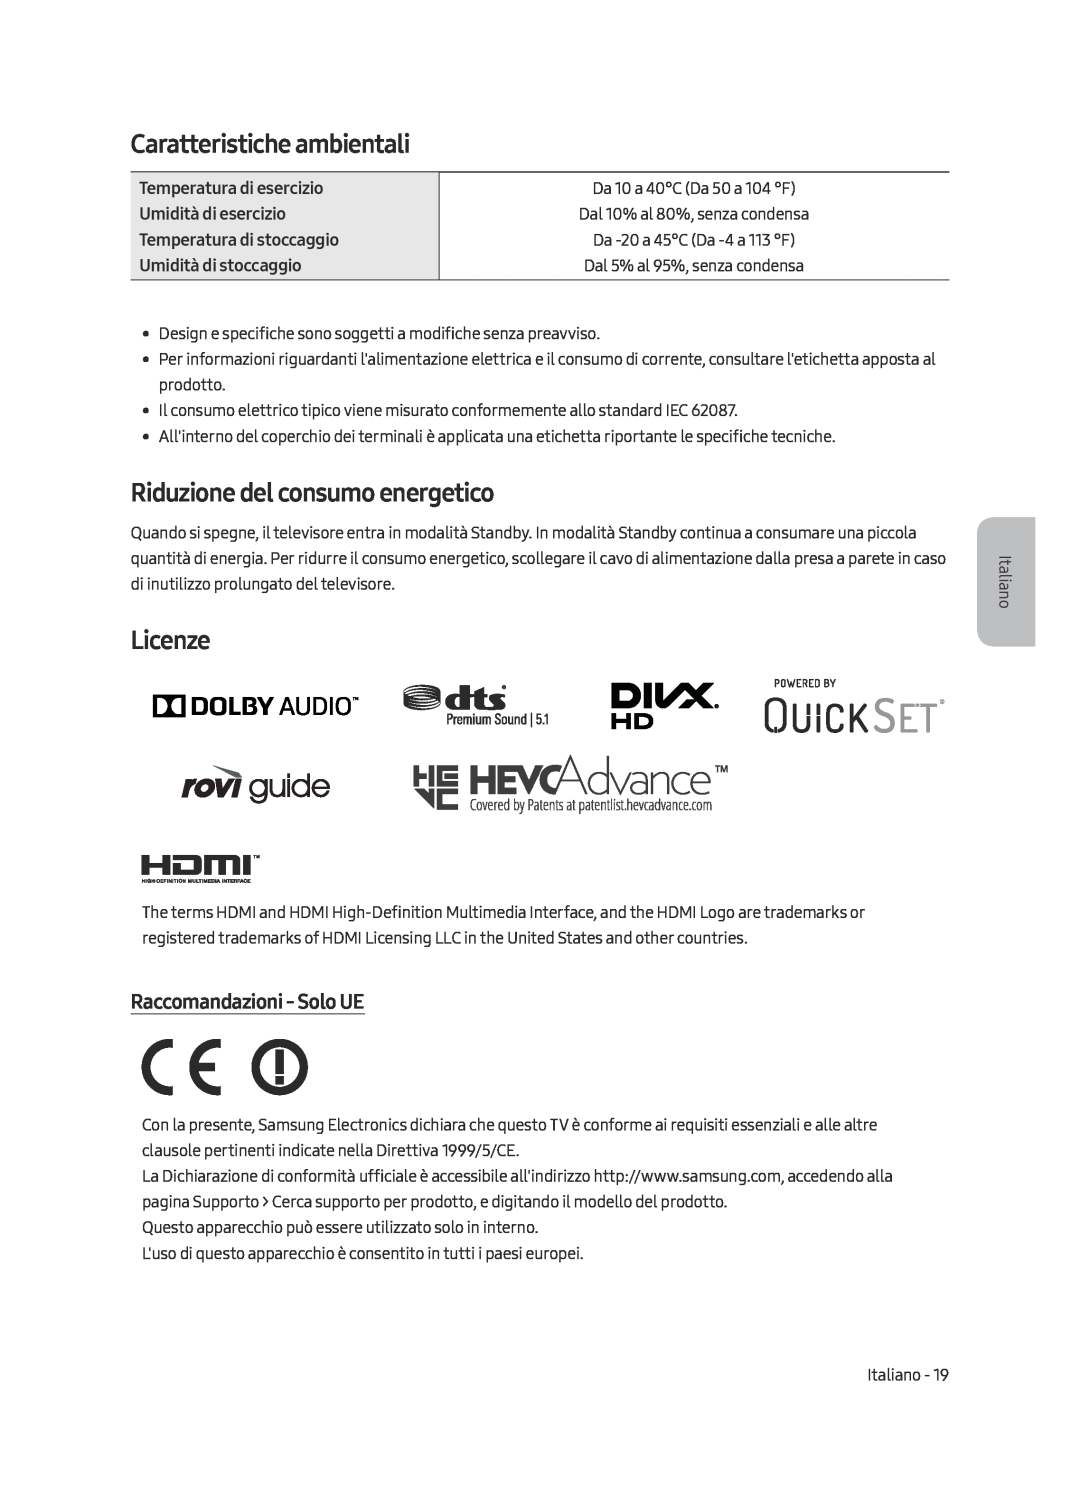 Samsung UE65MU9000TXZG Caratteristiche ambientali, Riduzione del consumo energetico, Licenze, Raccomandazioni - Solo UE 